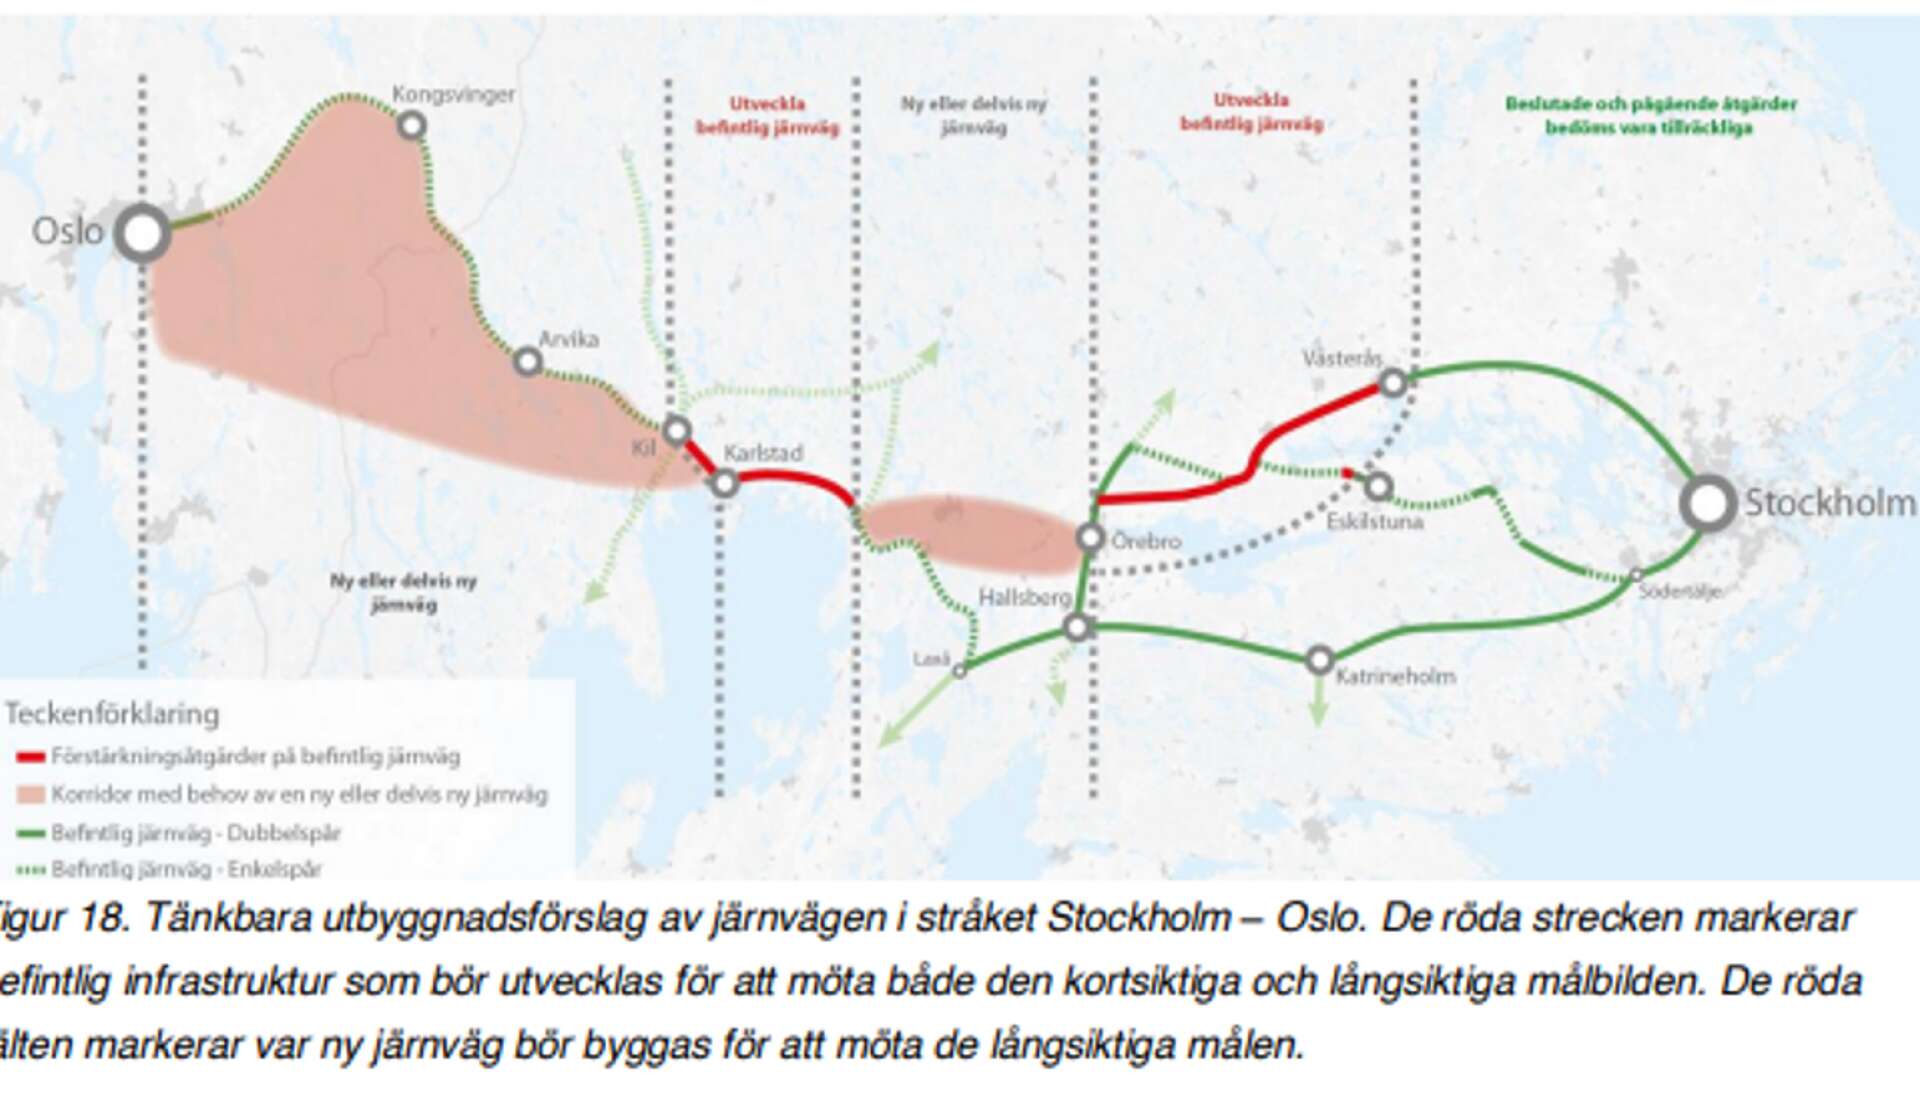 De rosa fälten visar områden där det kommer behövas ny eller devis ny järnväg för att klara av sträckan mellan Oslo och Stockholm på under tre timmar.